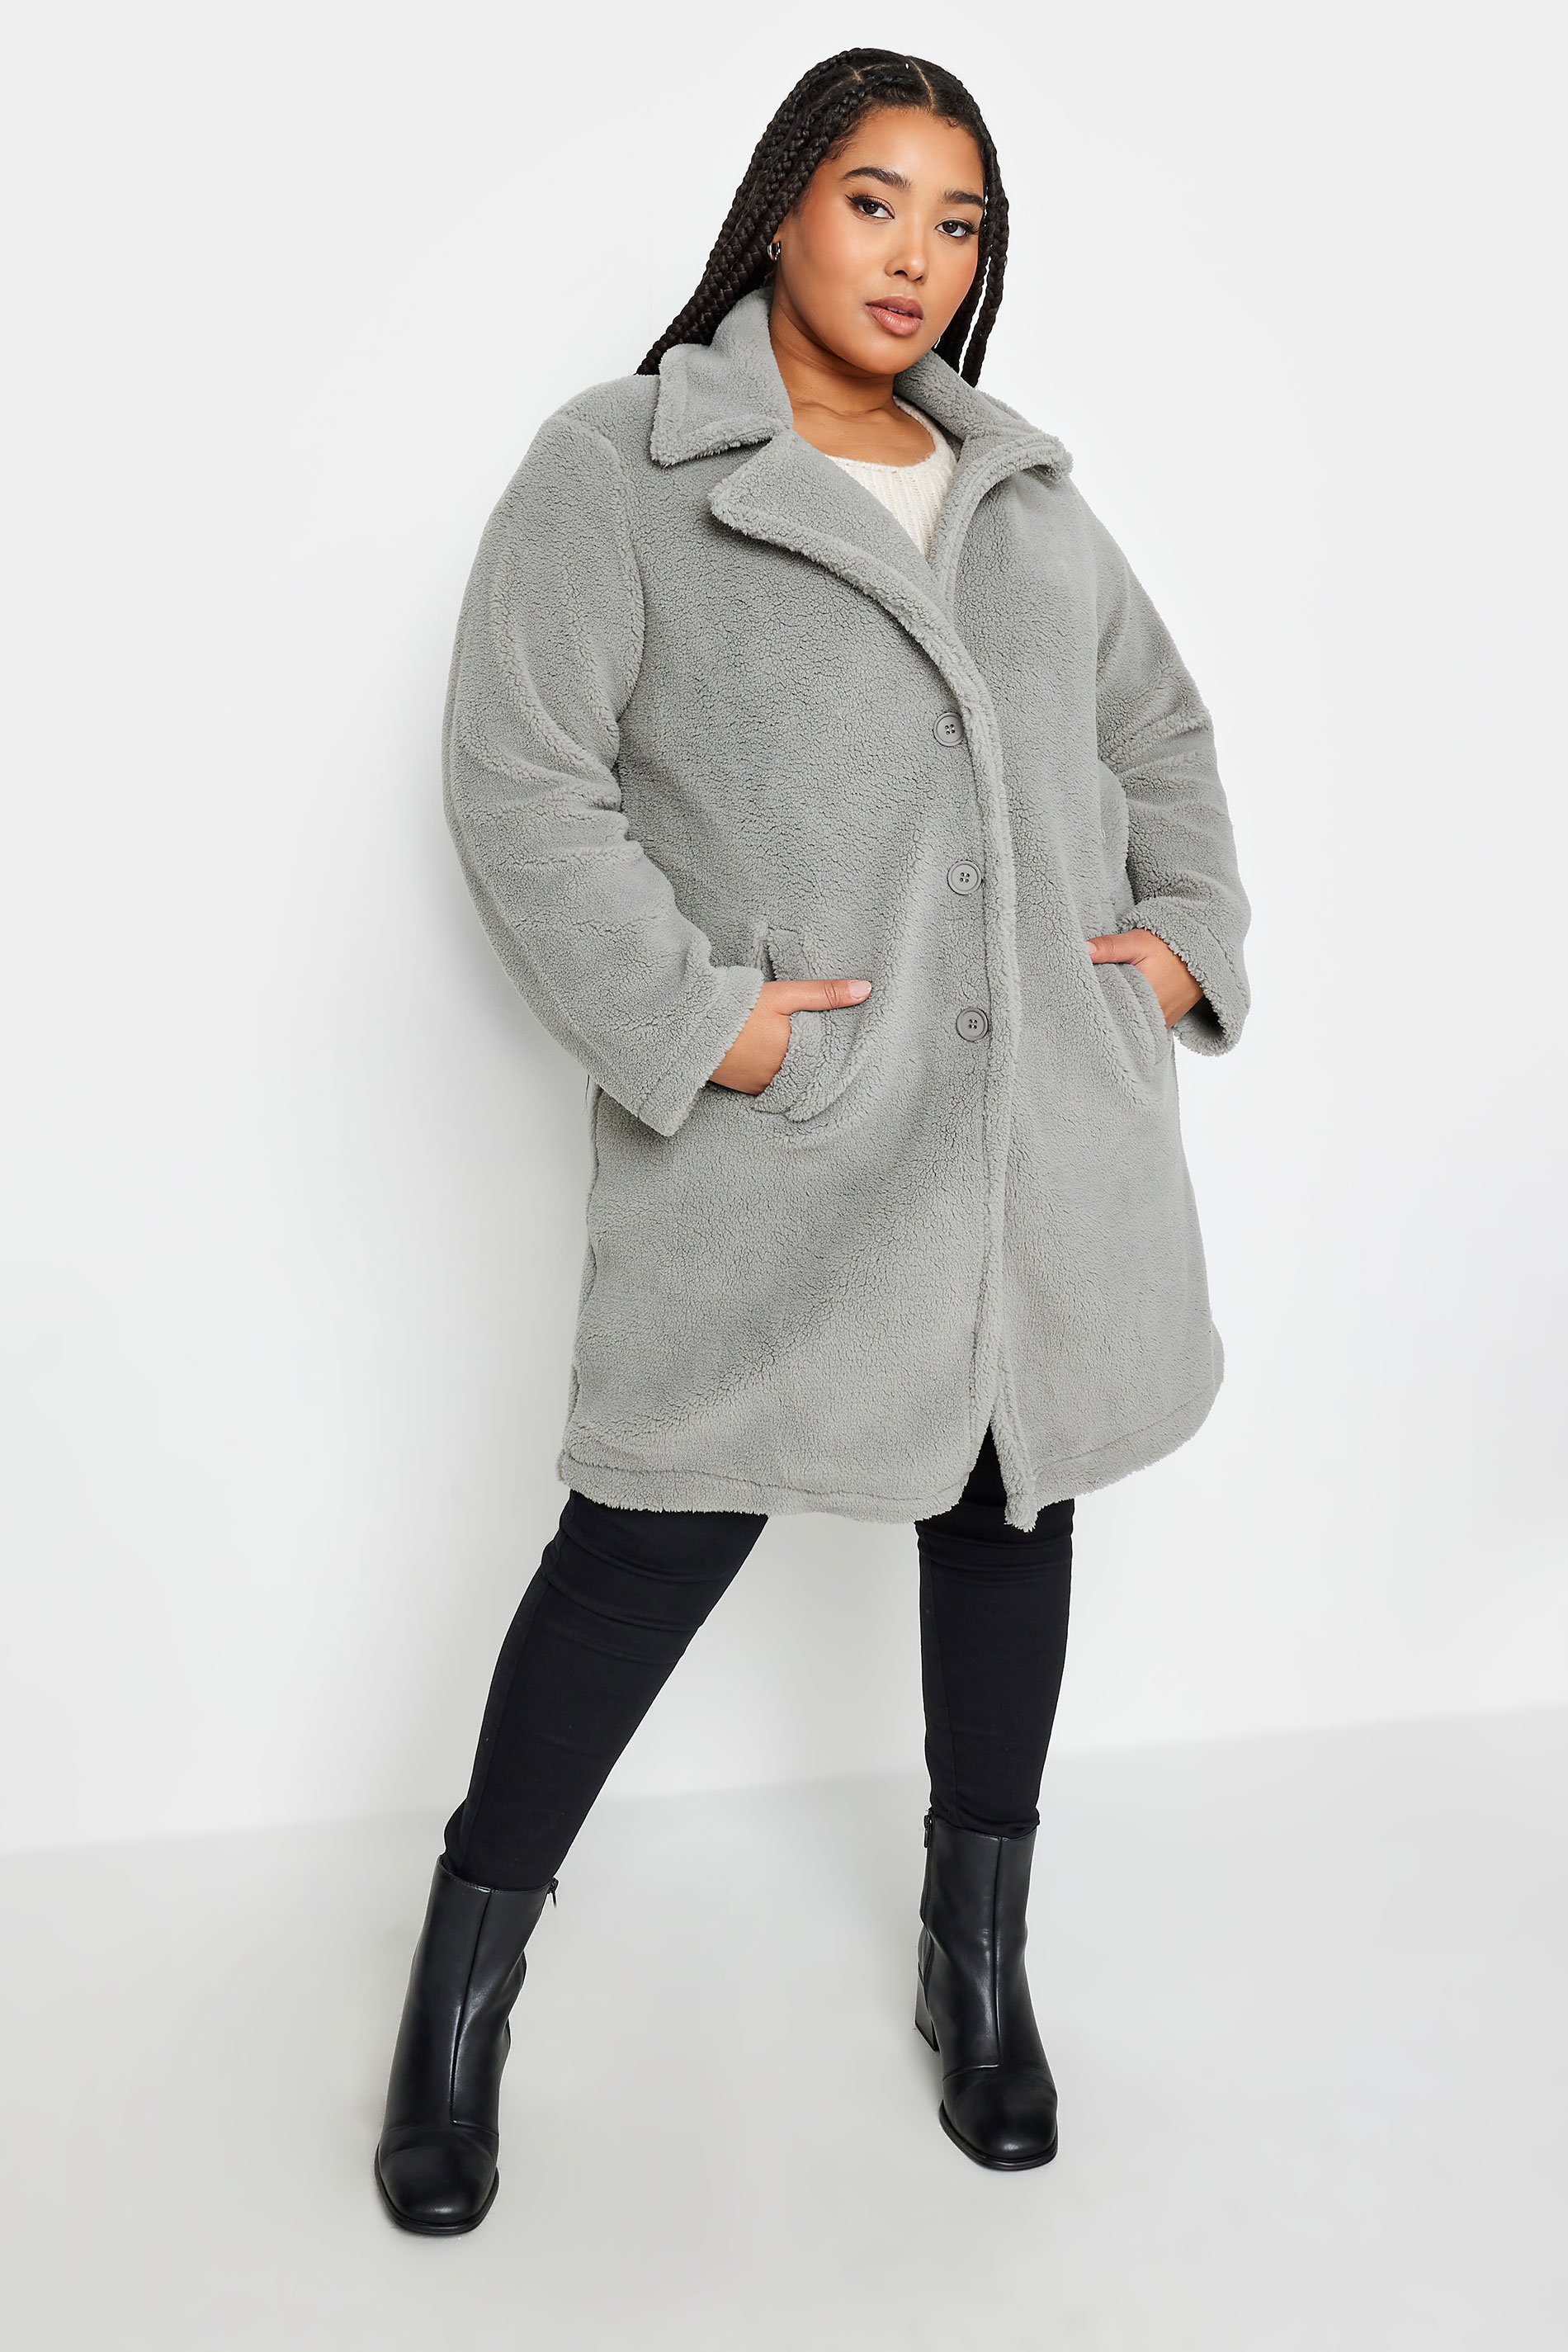 Yours Curve Grey Faux Fur Coat, Women's Curve & Plus Size, Yours